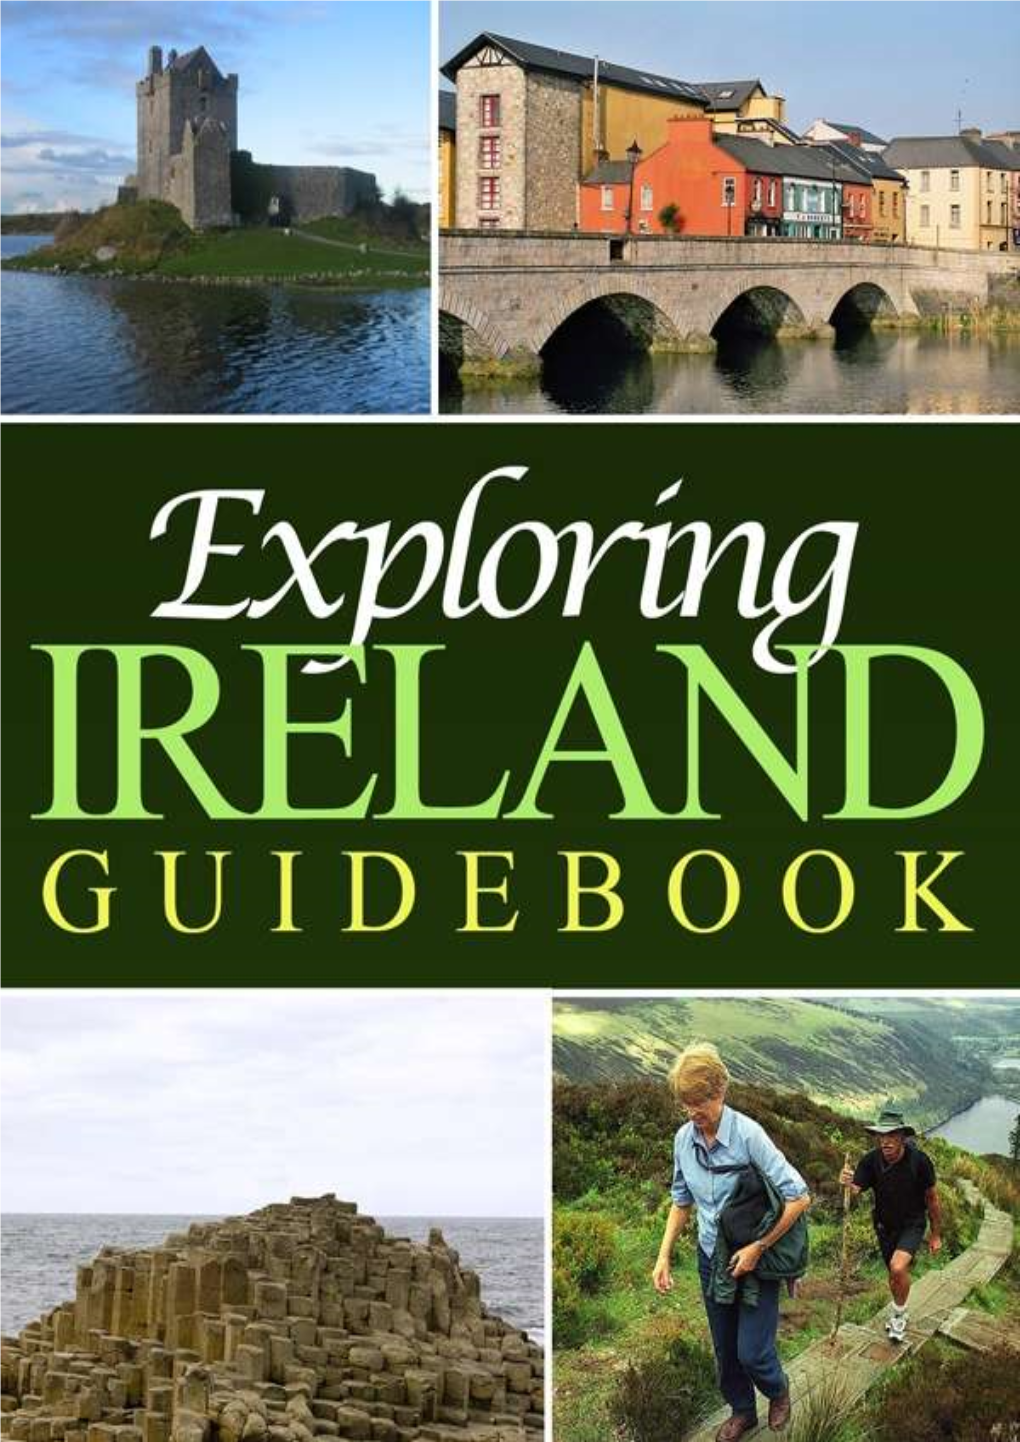 Exploring Ireland's